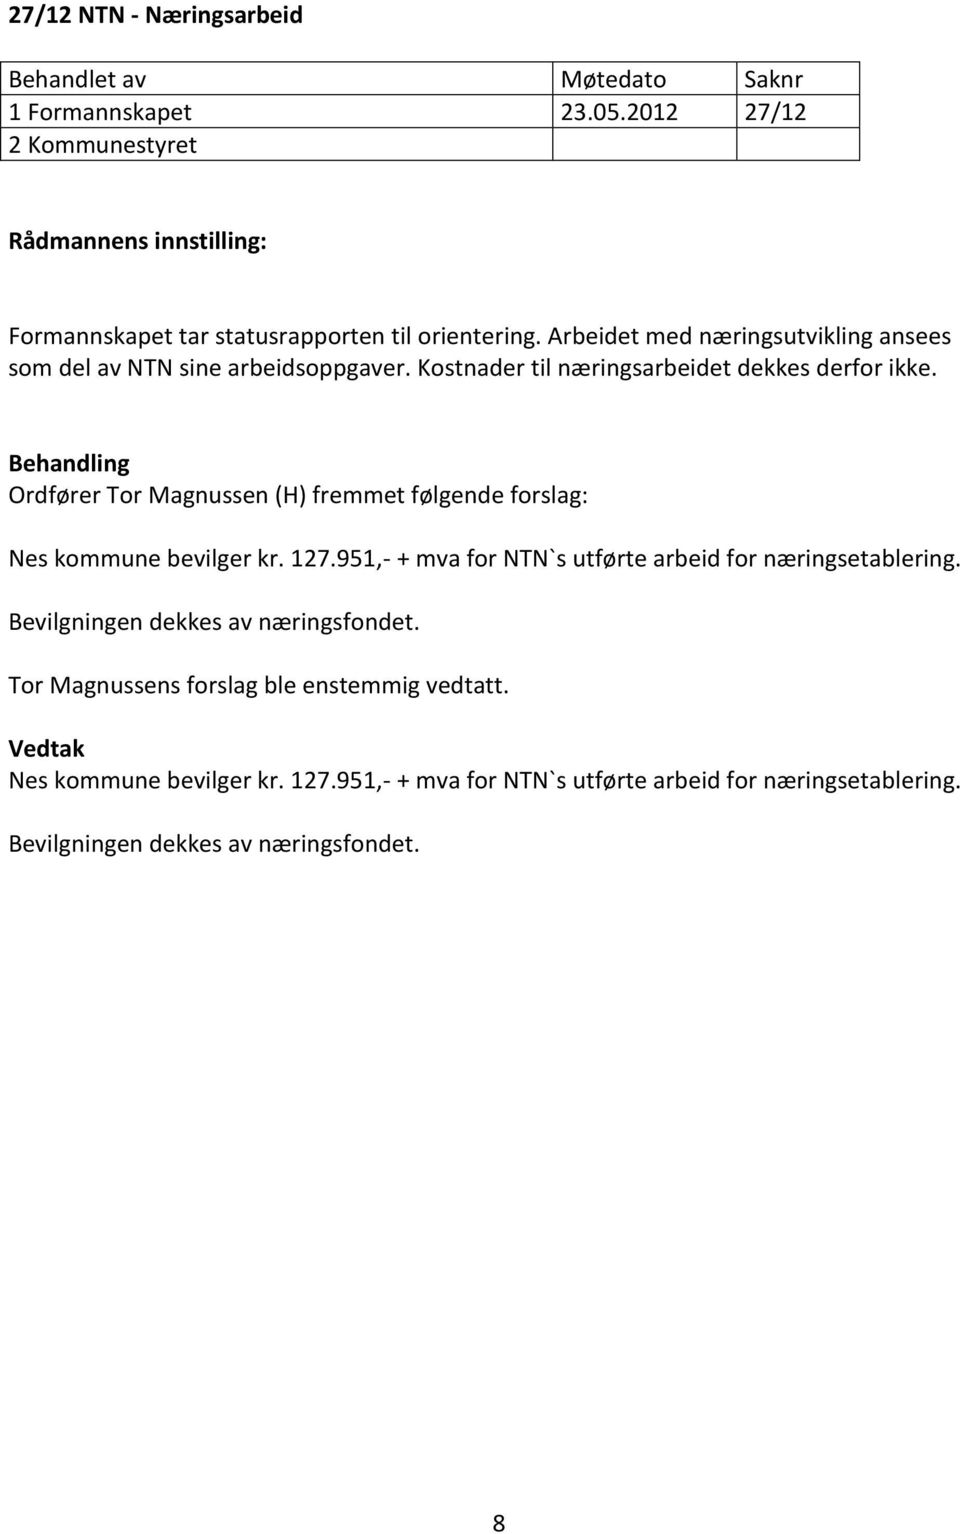 Behandling Ordfører Tor Magnussen (H) fremmet følgende forslag: Nes kommune bevilger kr. 127.951,- + mva for NTN`s utførte arbeid for næringsetablering.